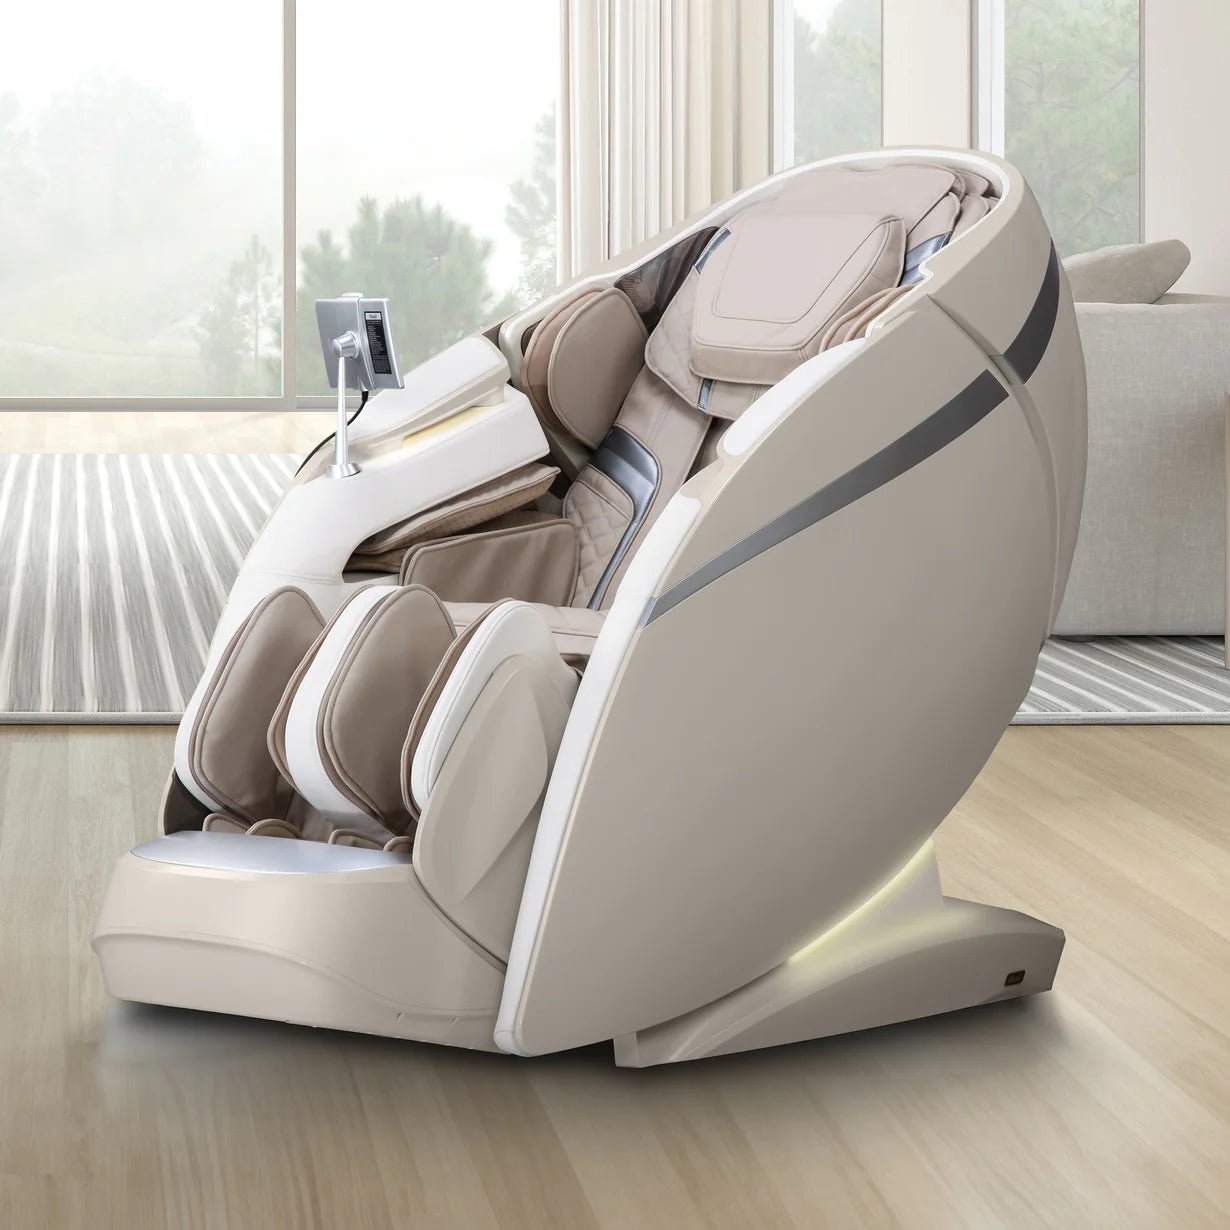 OsakiMassage ChairOsaki OS-Pro Ai Series DuoMax 4D Massage ChairTaupeMassage Chair Heaven